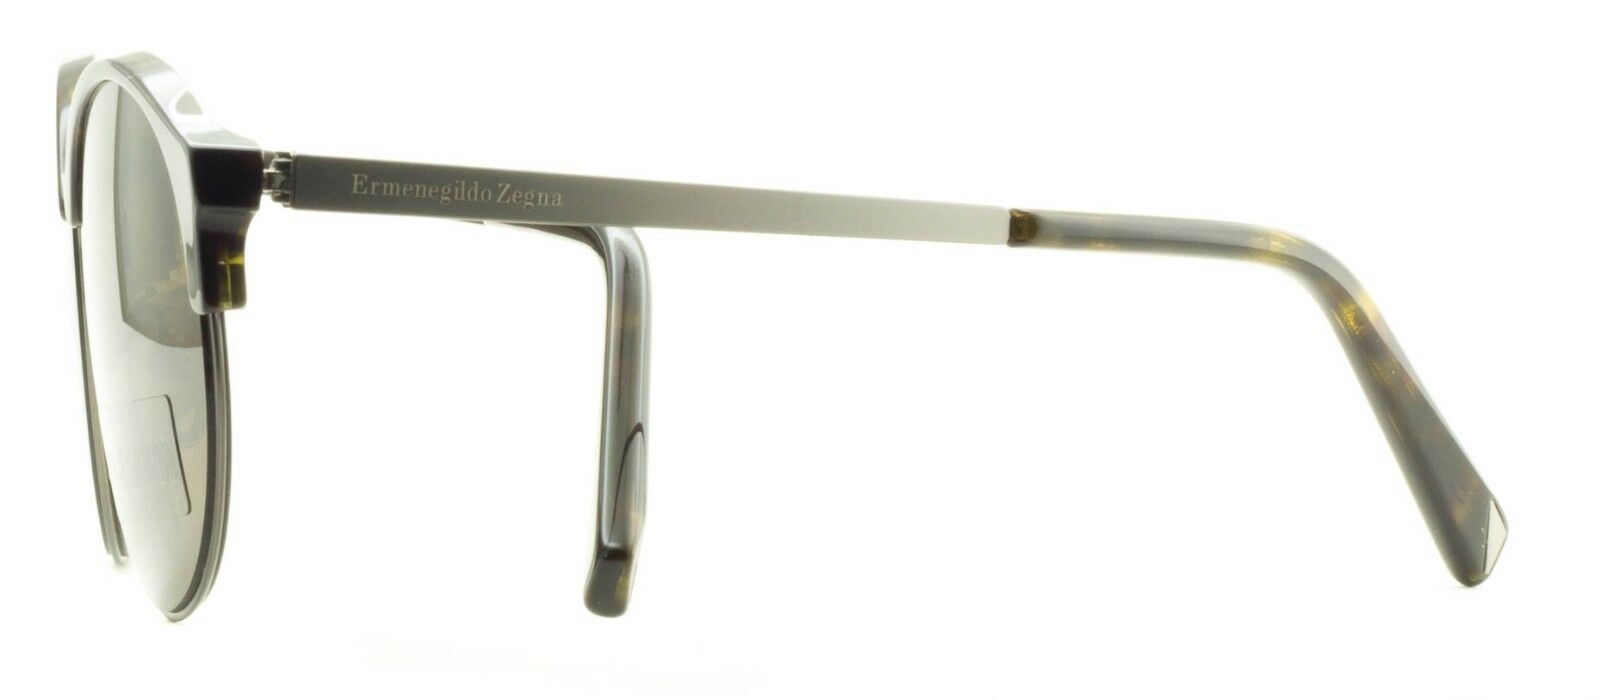 Ermenegildo Zegna EZ 0046 52J Sunglasses Shades Glasses 100% UV - New BNIB Italy